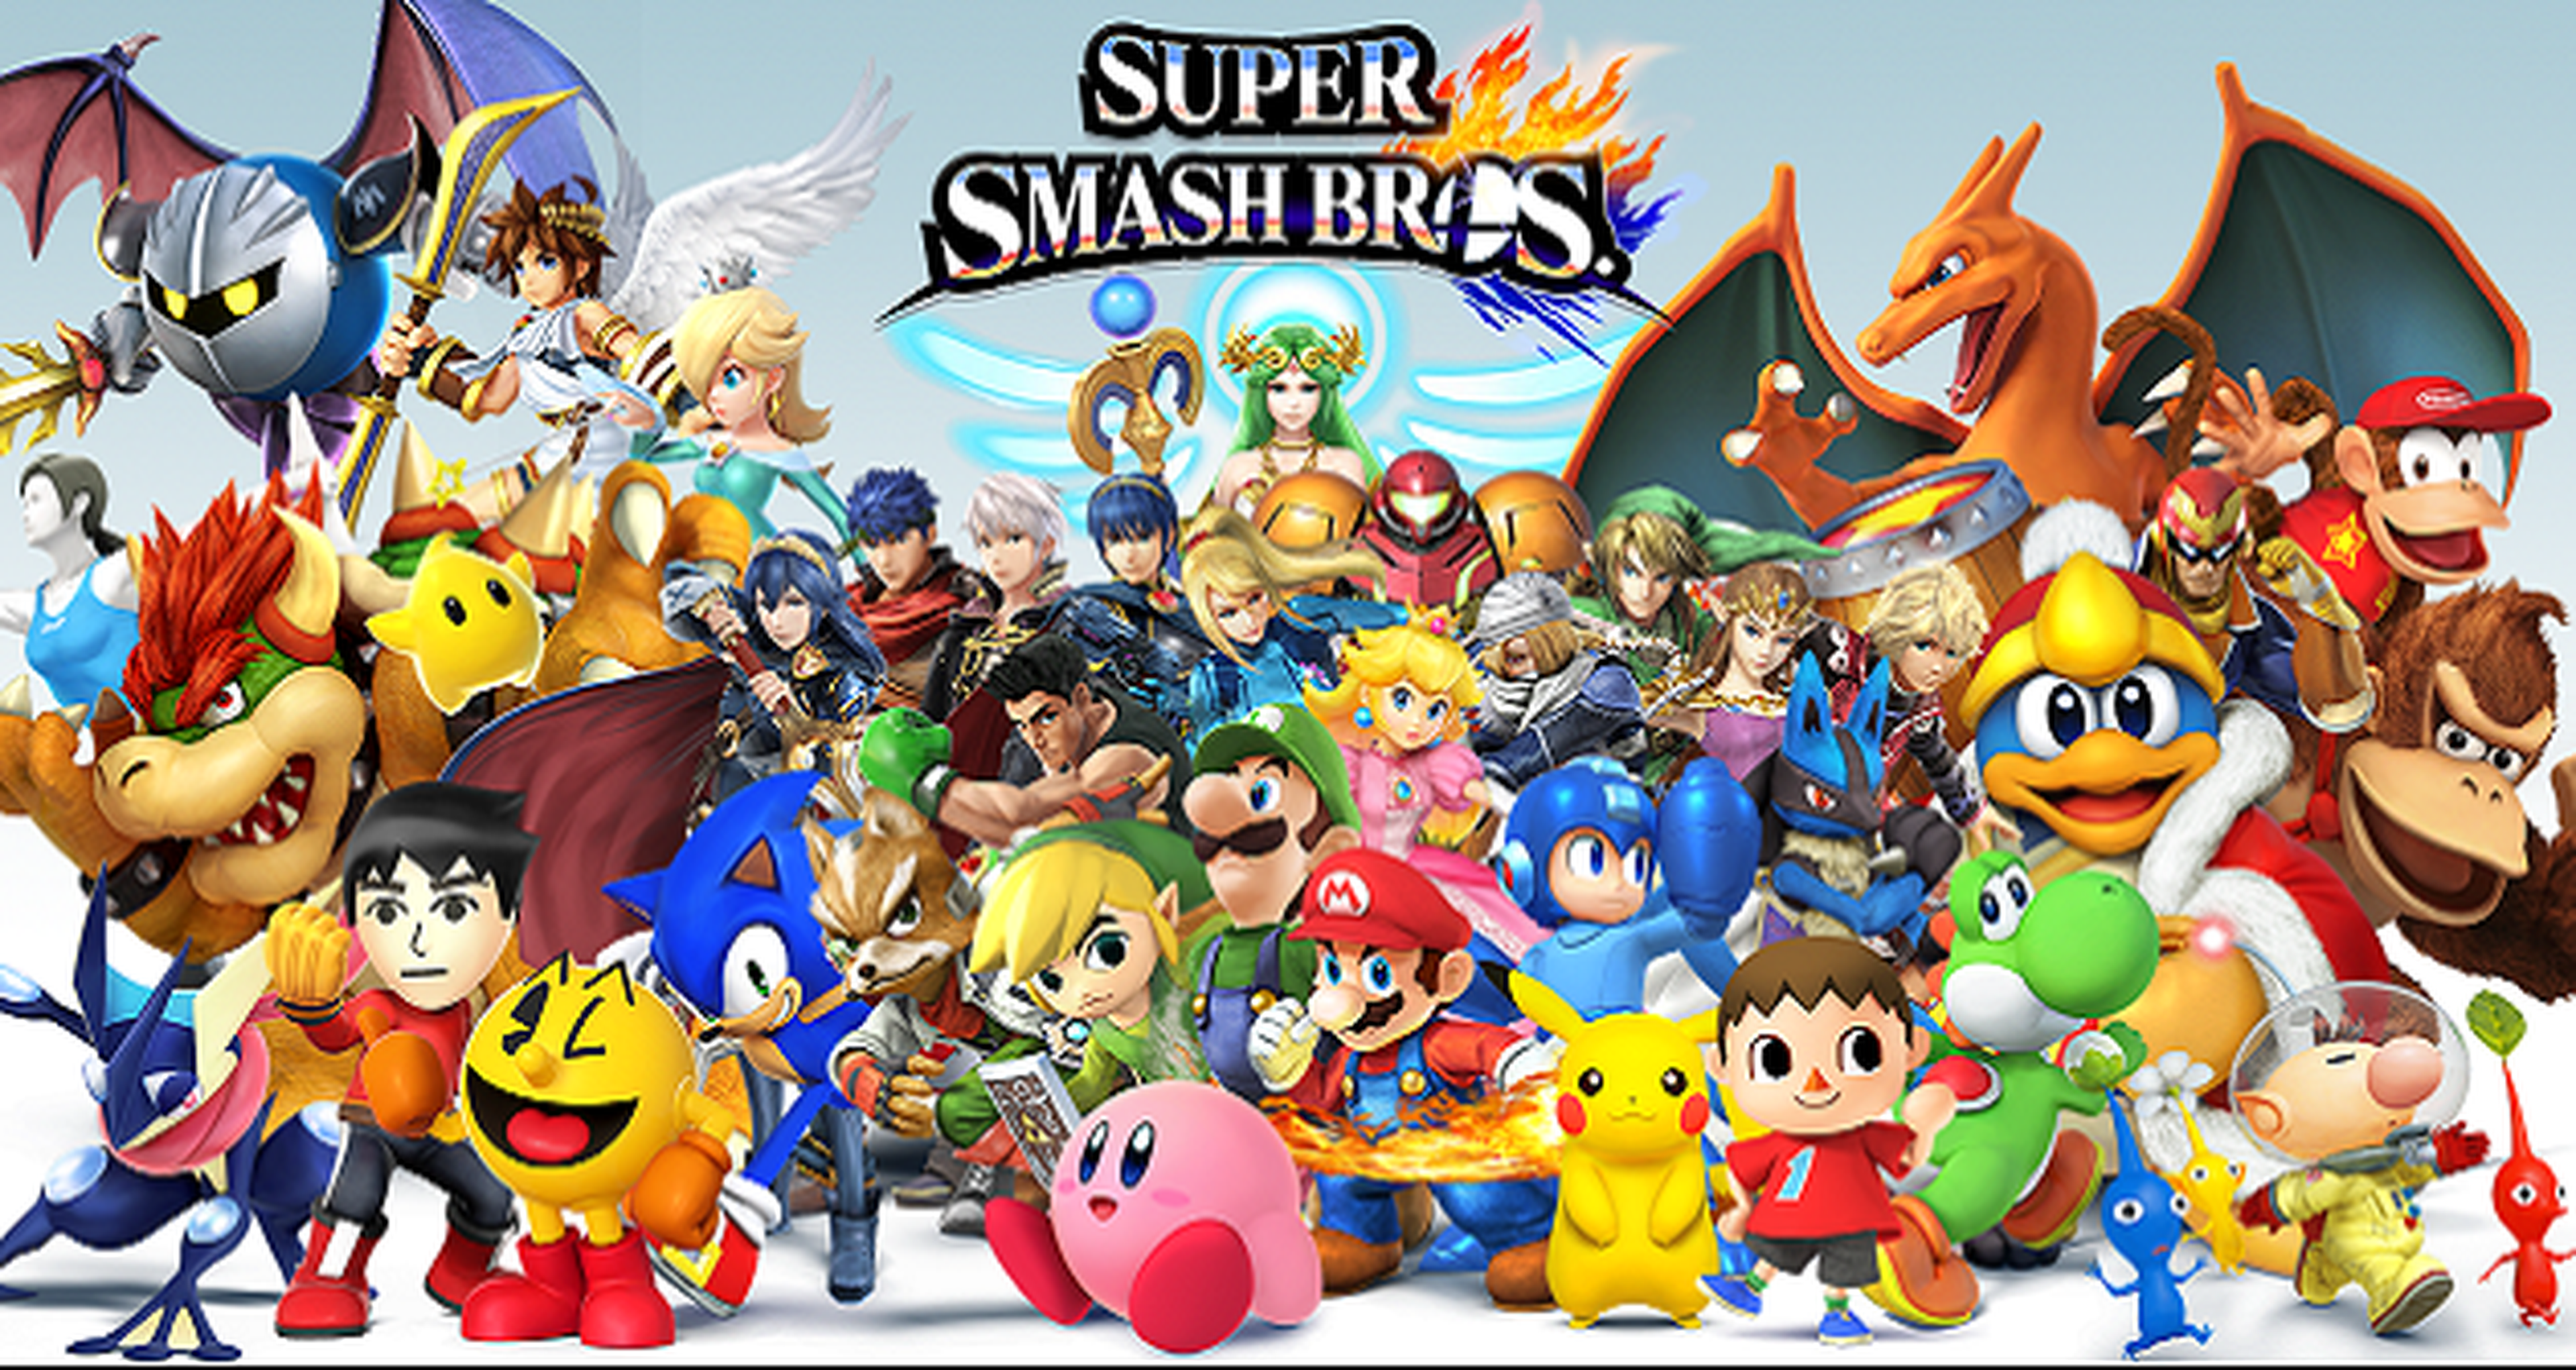 Super Smash Bros for Wii U, mejor juego de 2014 en Metacritic